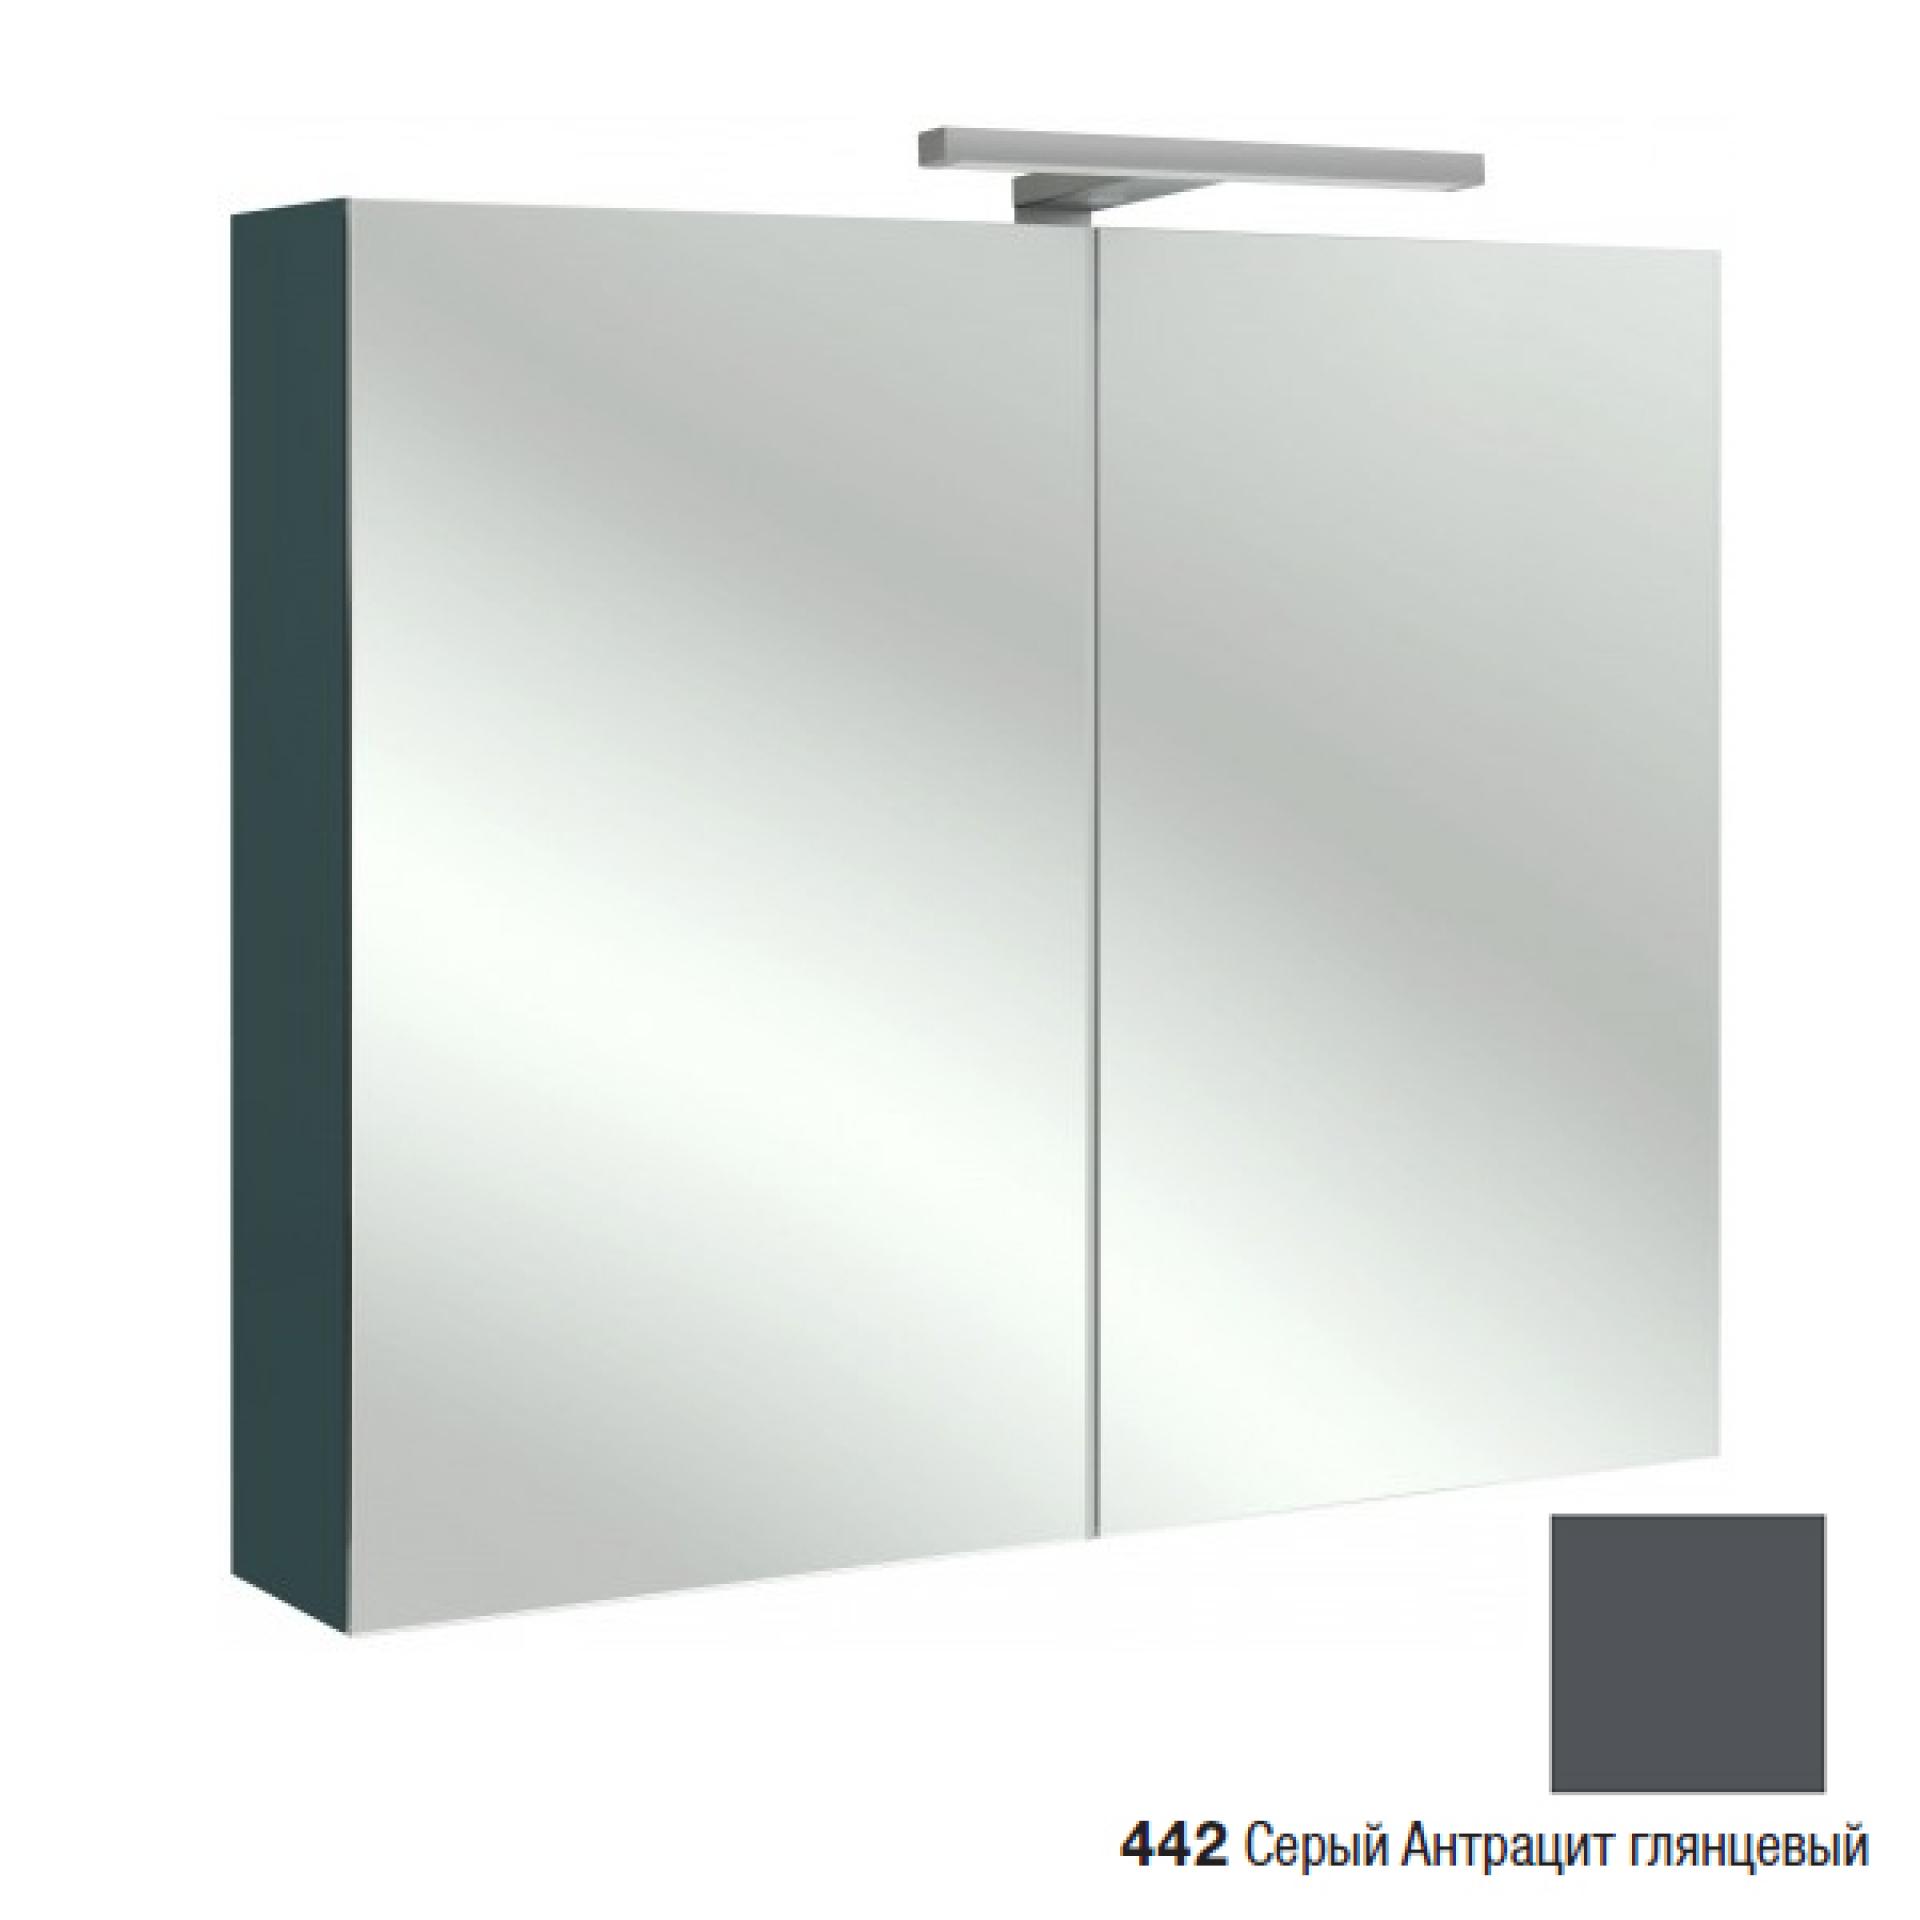 Зеркальный шкаф 80 см Jacob Delafon EB796RU-442, серый антрацит